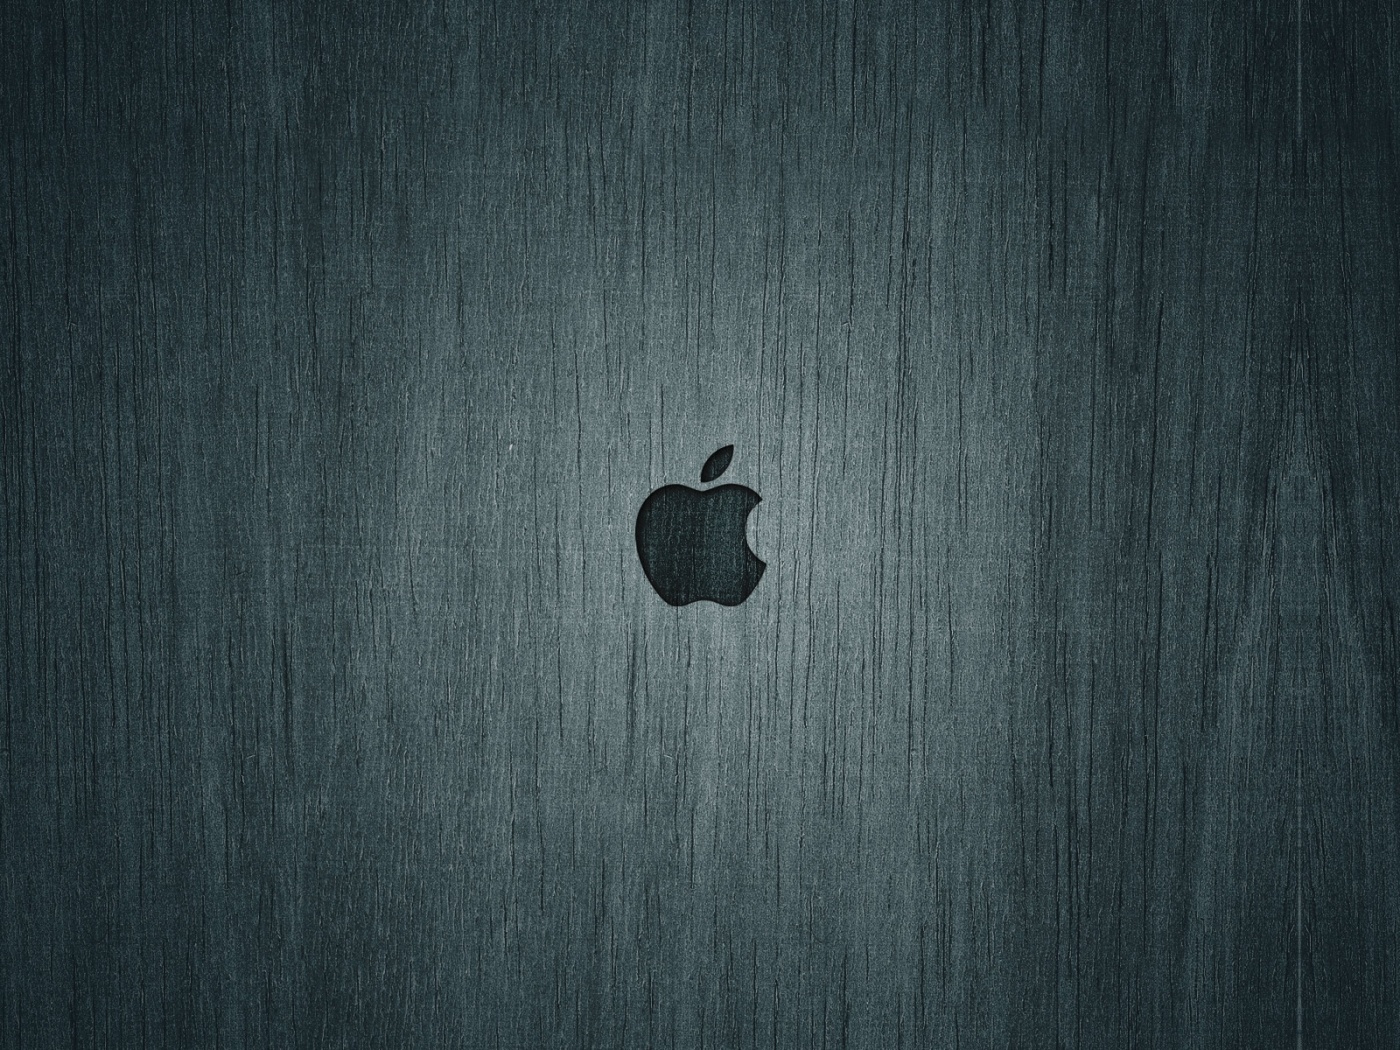 Логотип Apple на доске обои